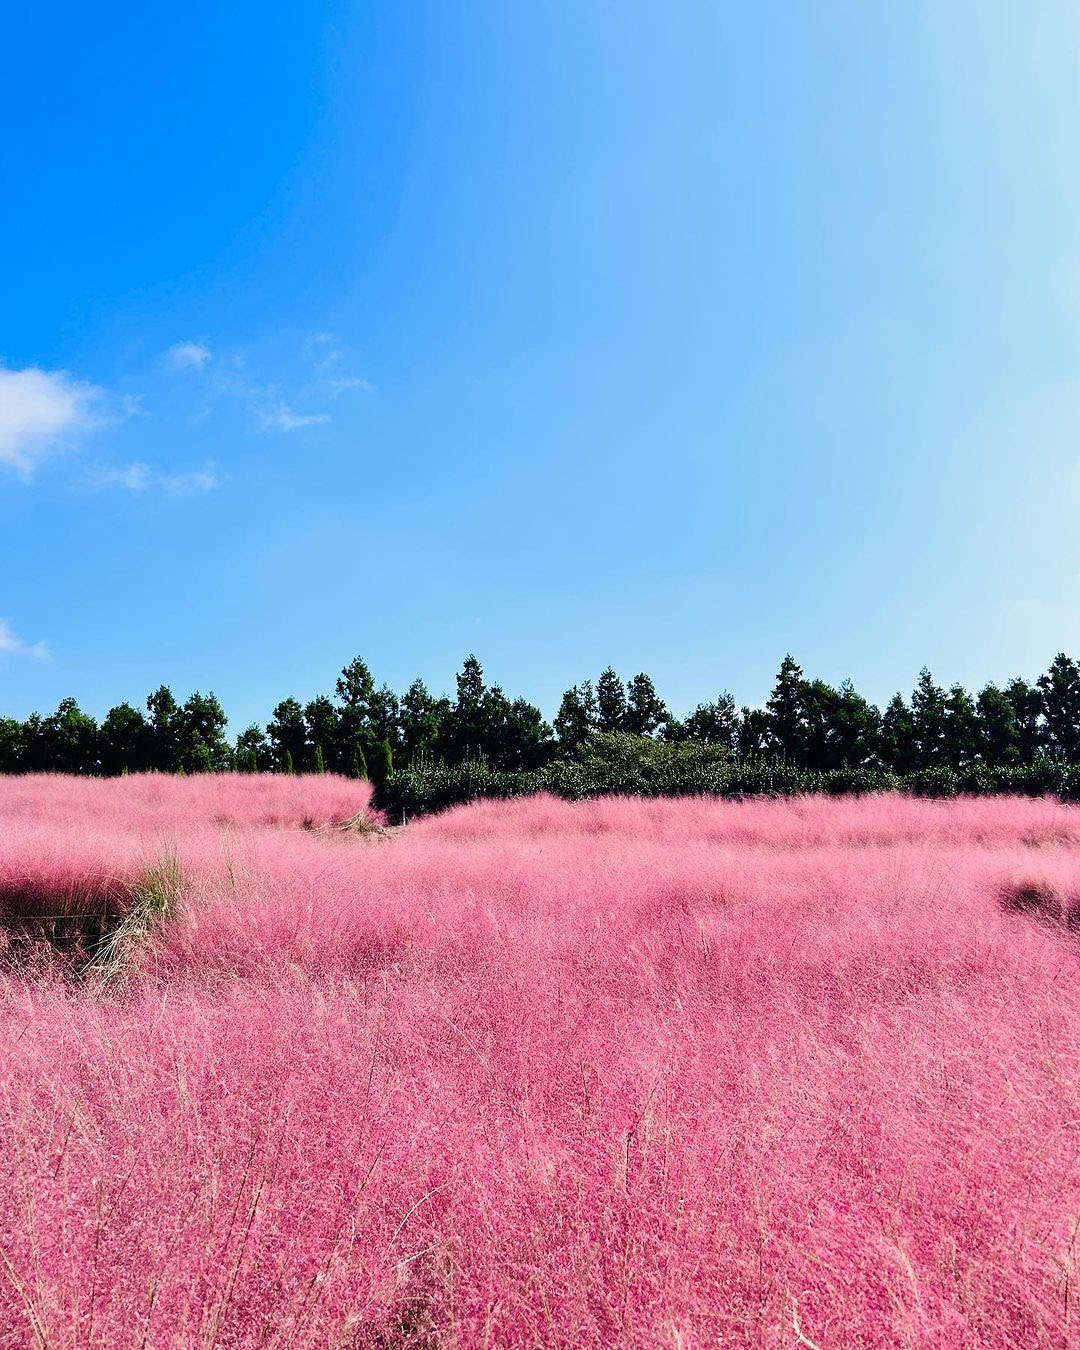 đồng cỏ hồng công viên hueree